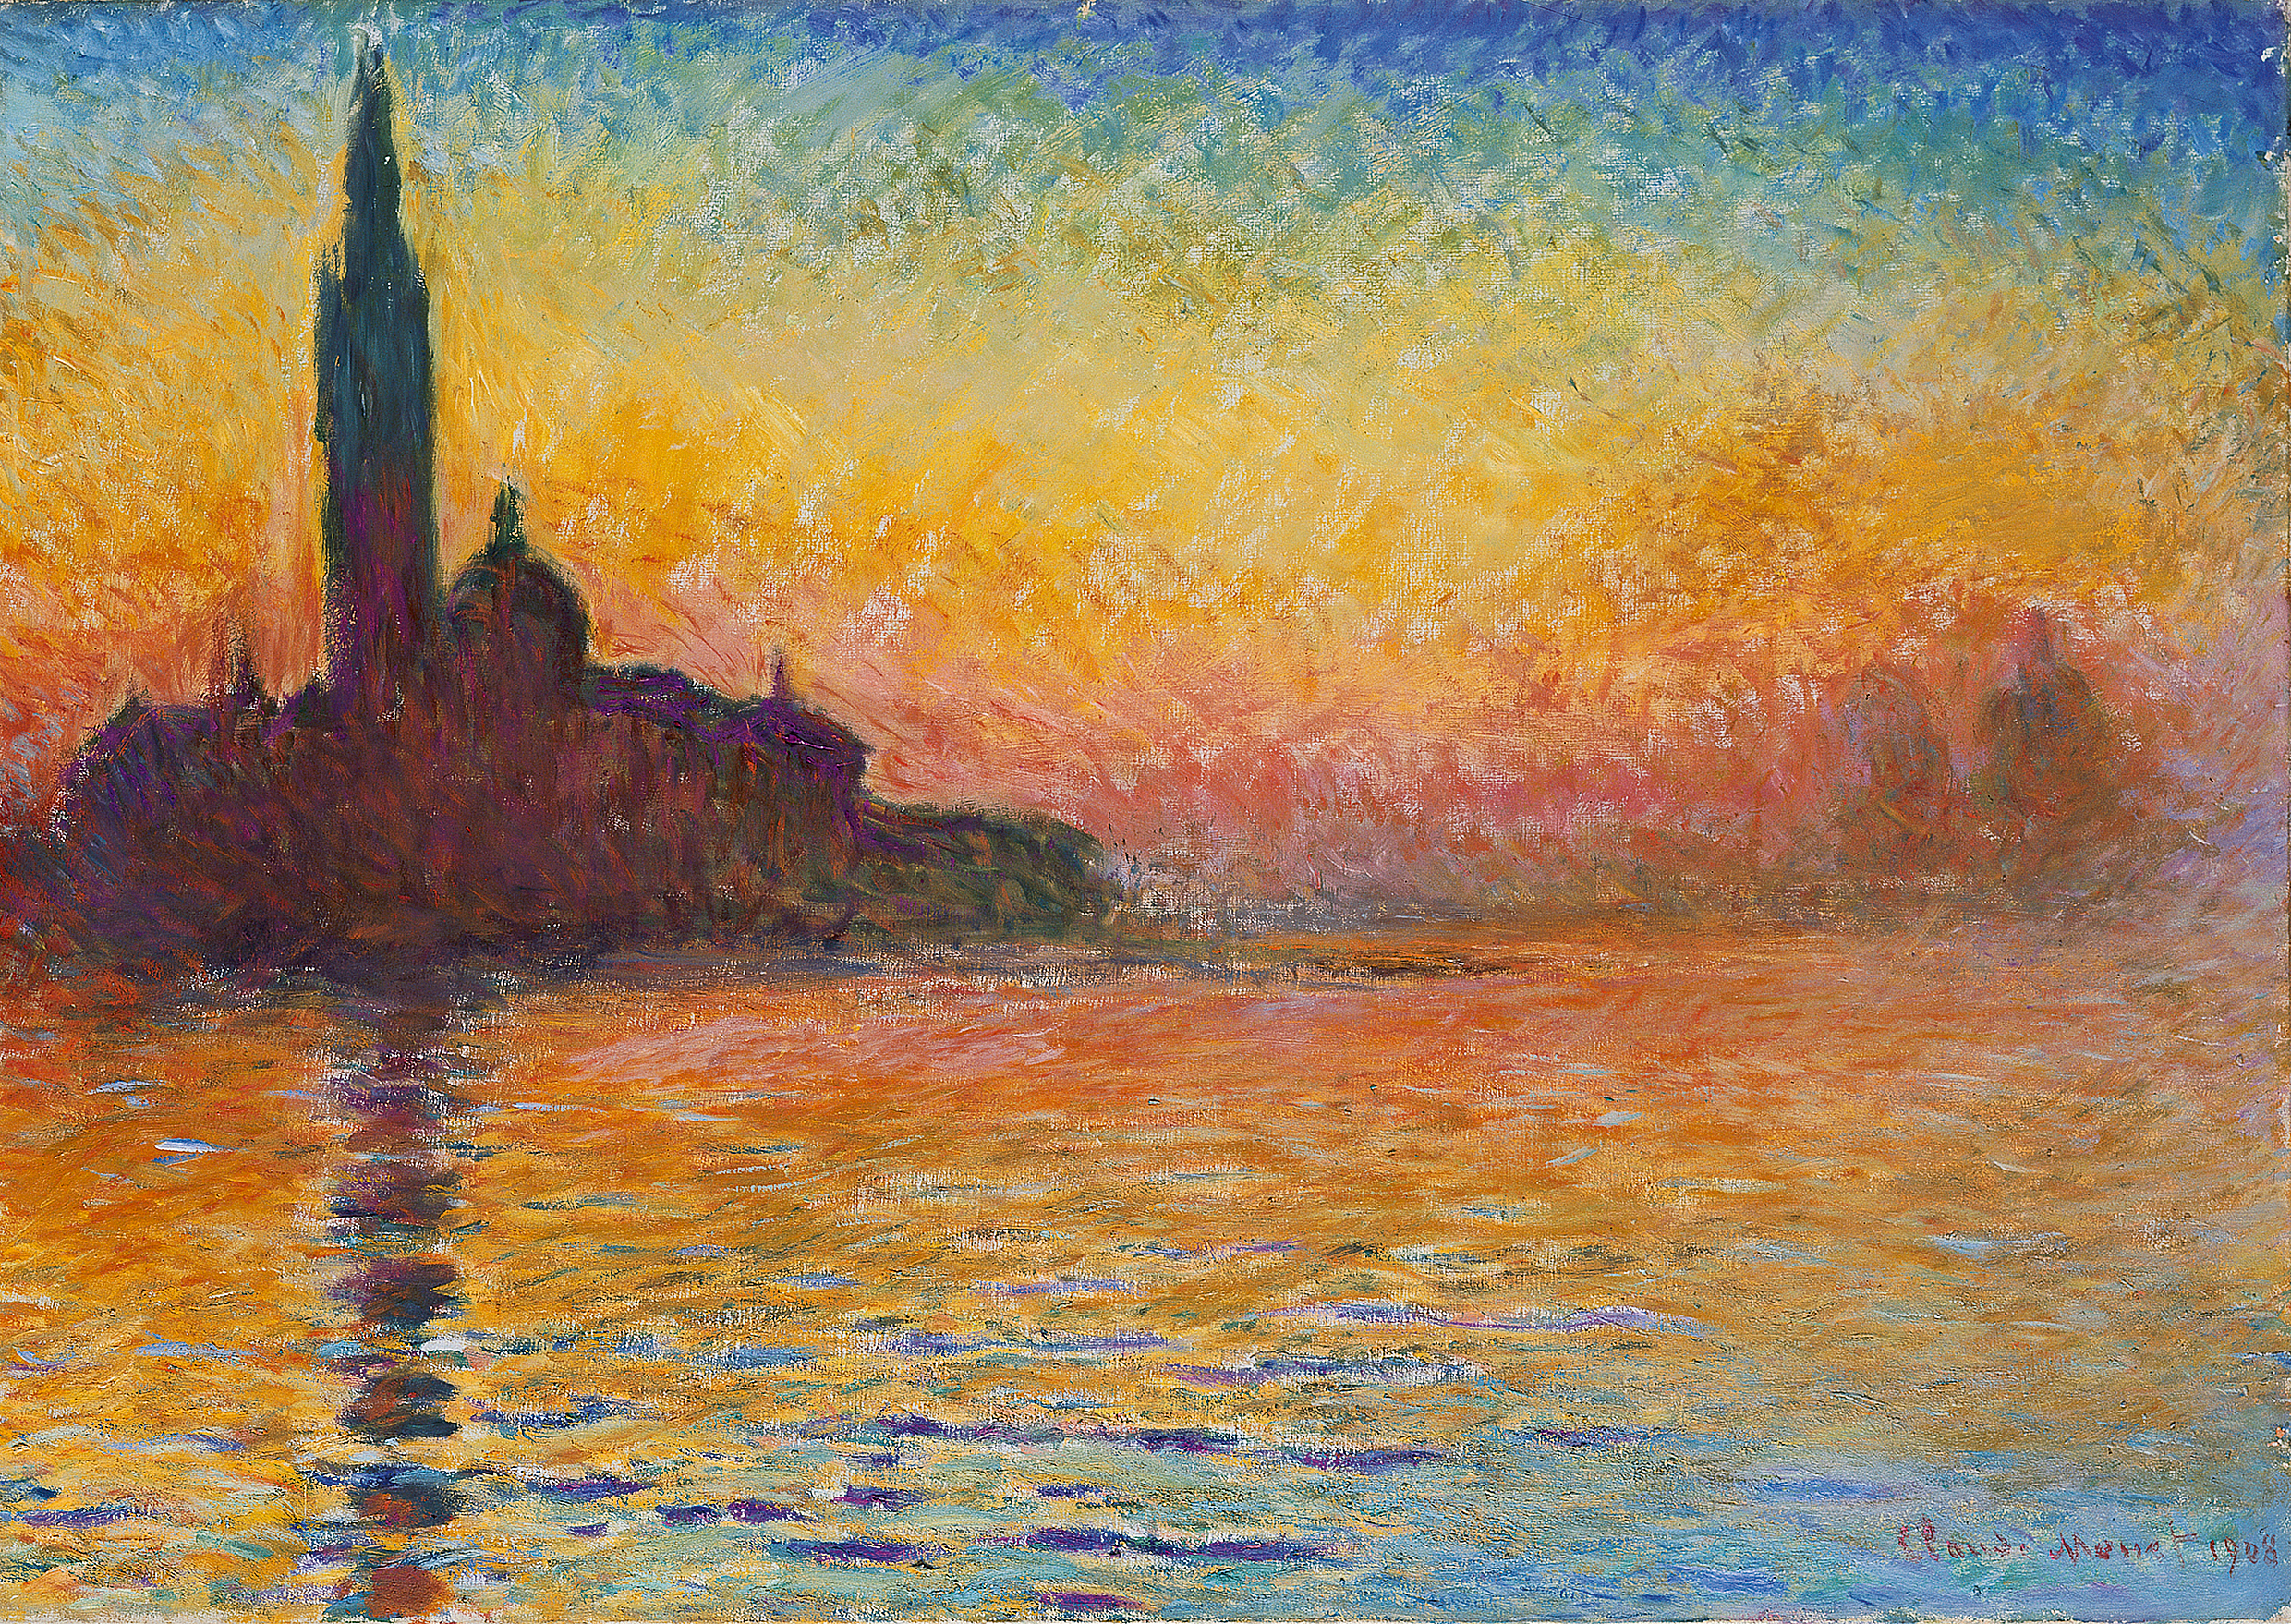 سان جورجيو ماجيوري عند الغسق by Claude Monet - 1908 - 65.2 x 92.4 cm 